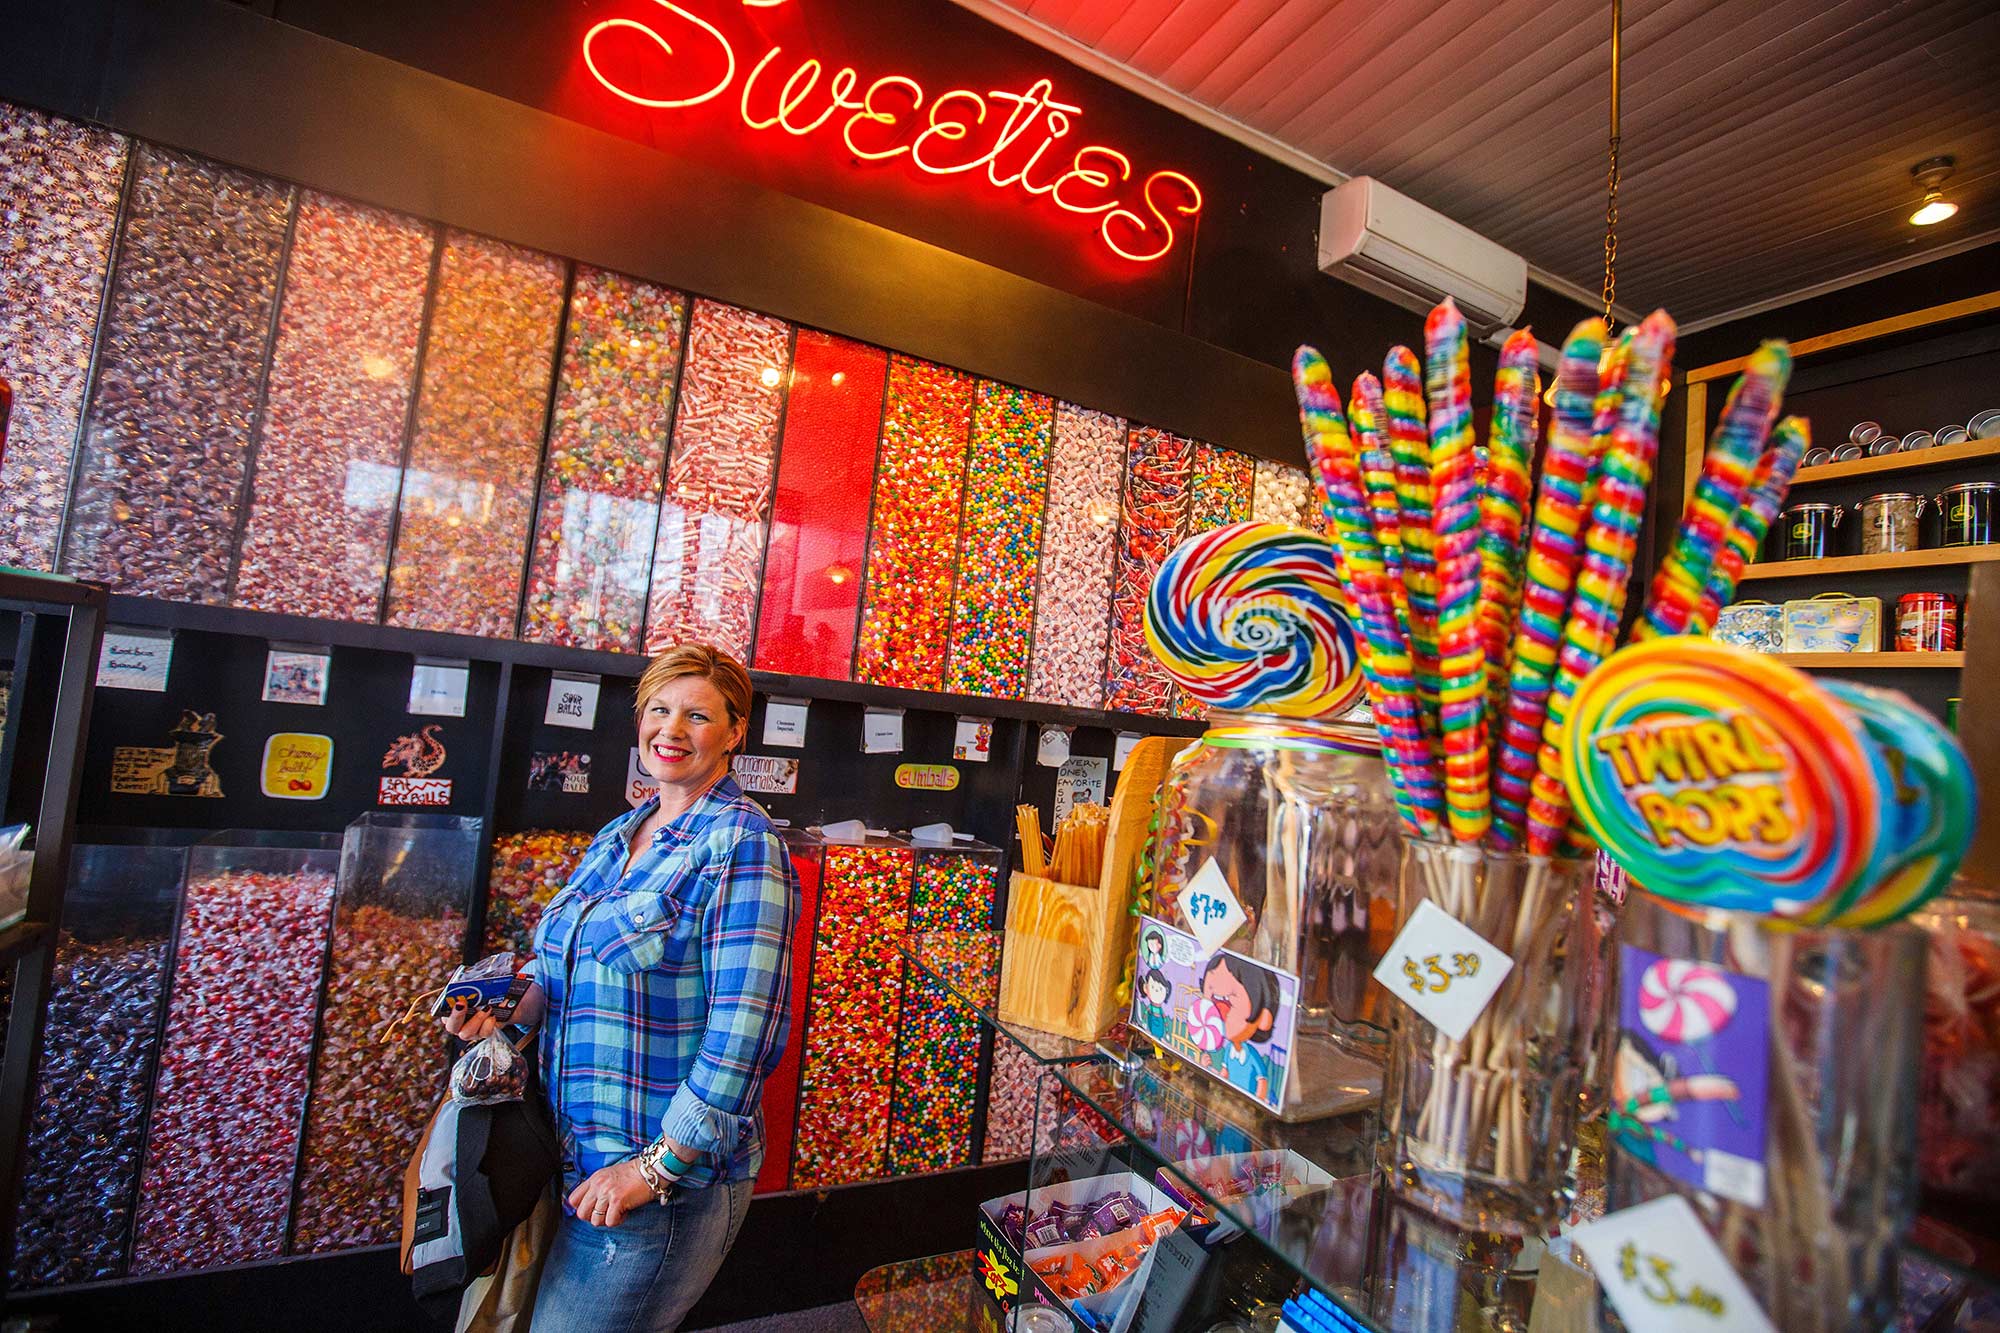 Sweeties Candy, Northampton, MA - 4/12/15